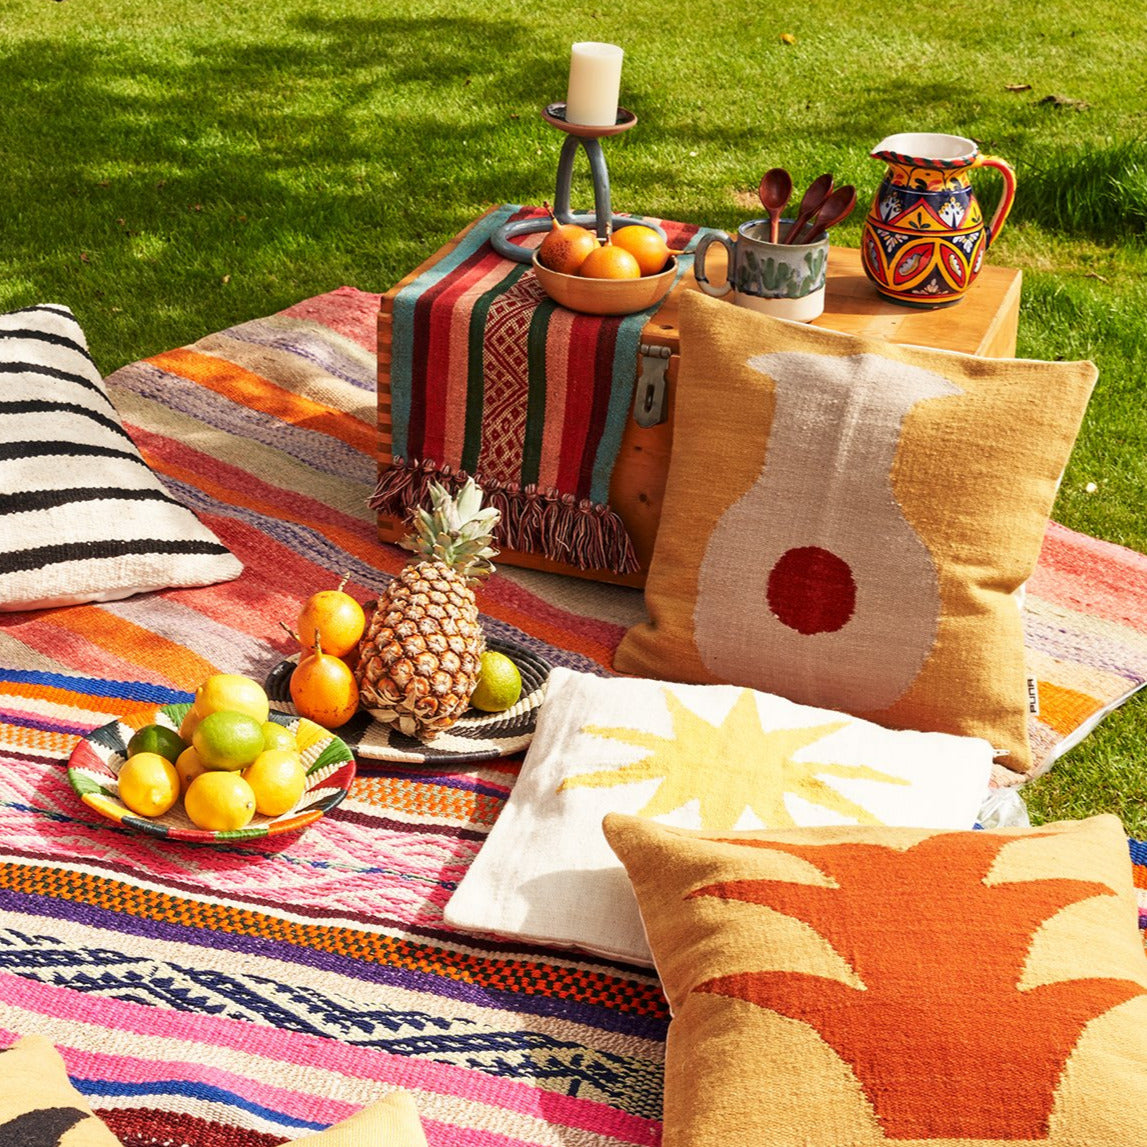 Farbiges Picknick mit peruanischen Kissen, Teppichen und Früchten